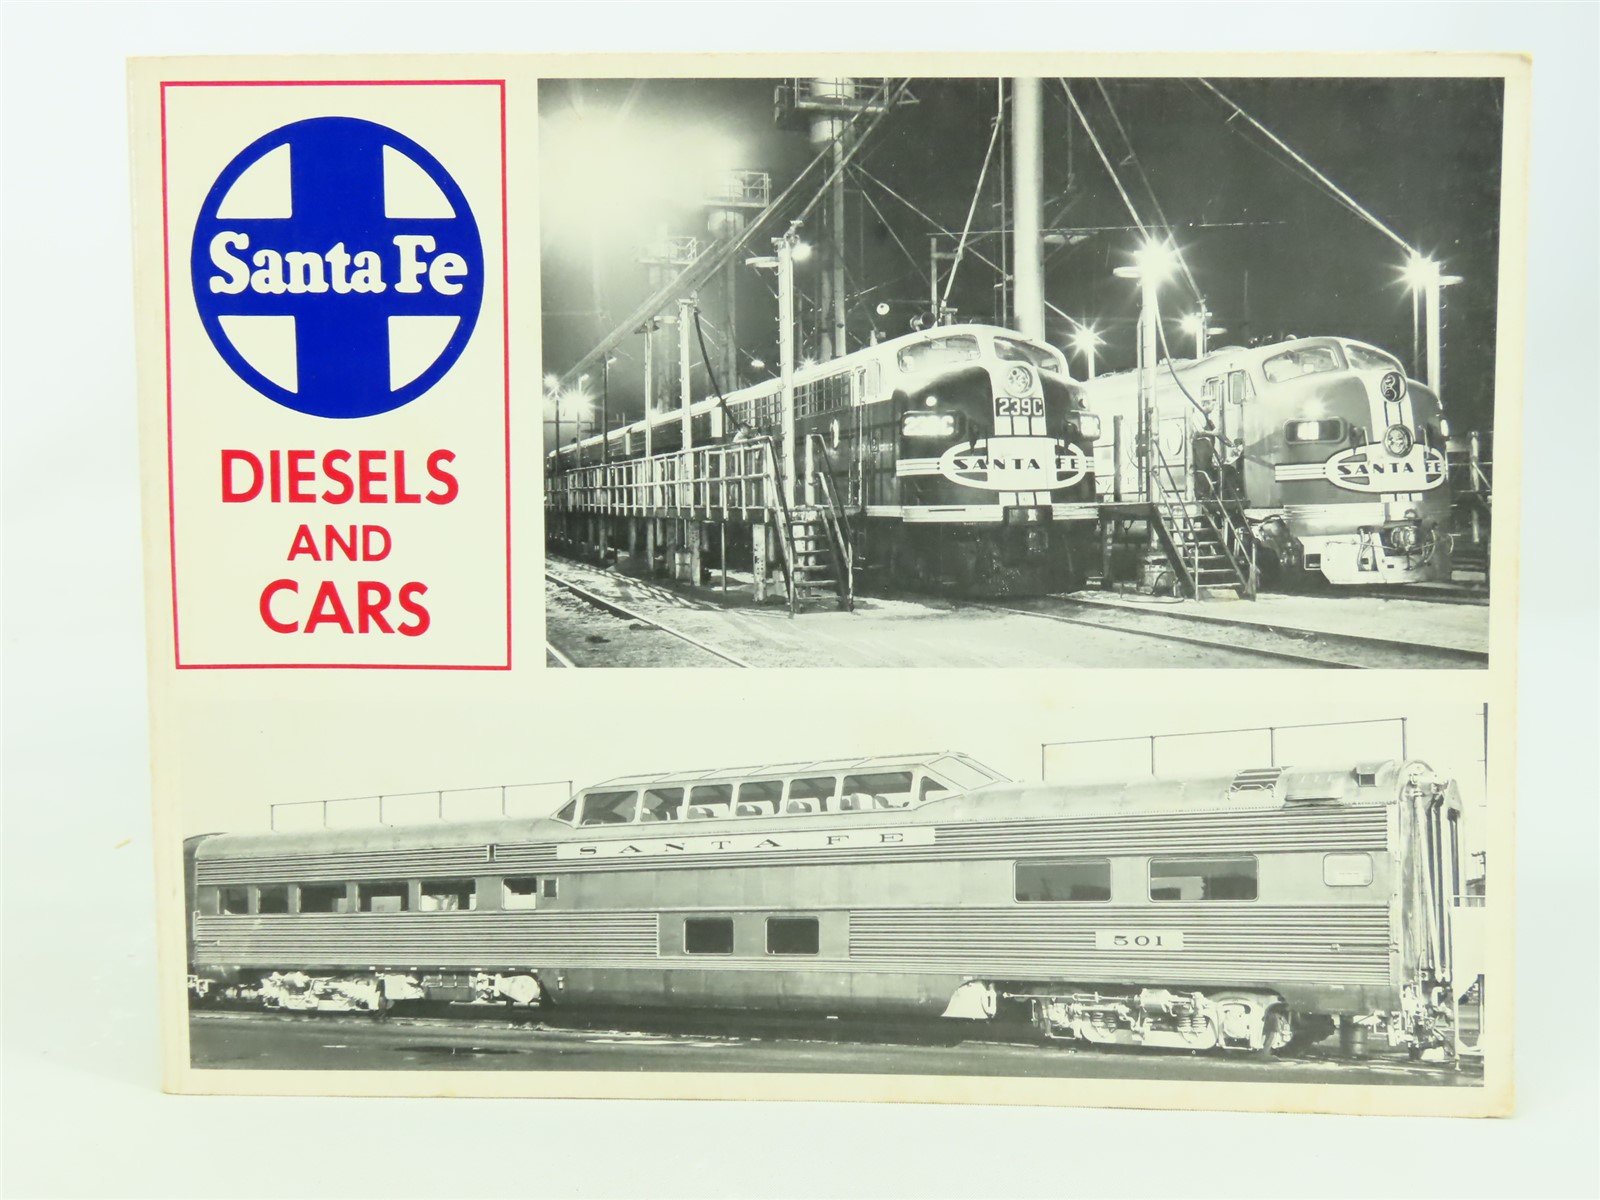 Santa Fe Diesels And Cars by Robert J. Wayner, Editor ©1974 SC Book